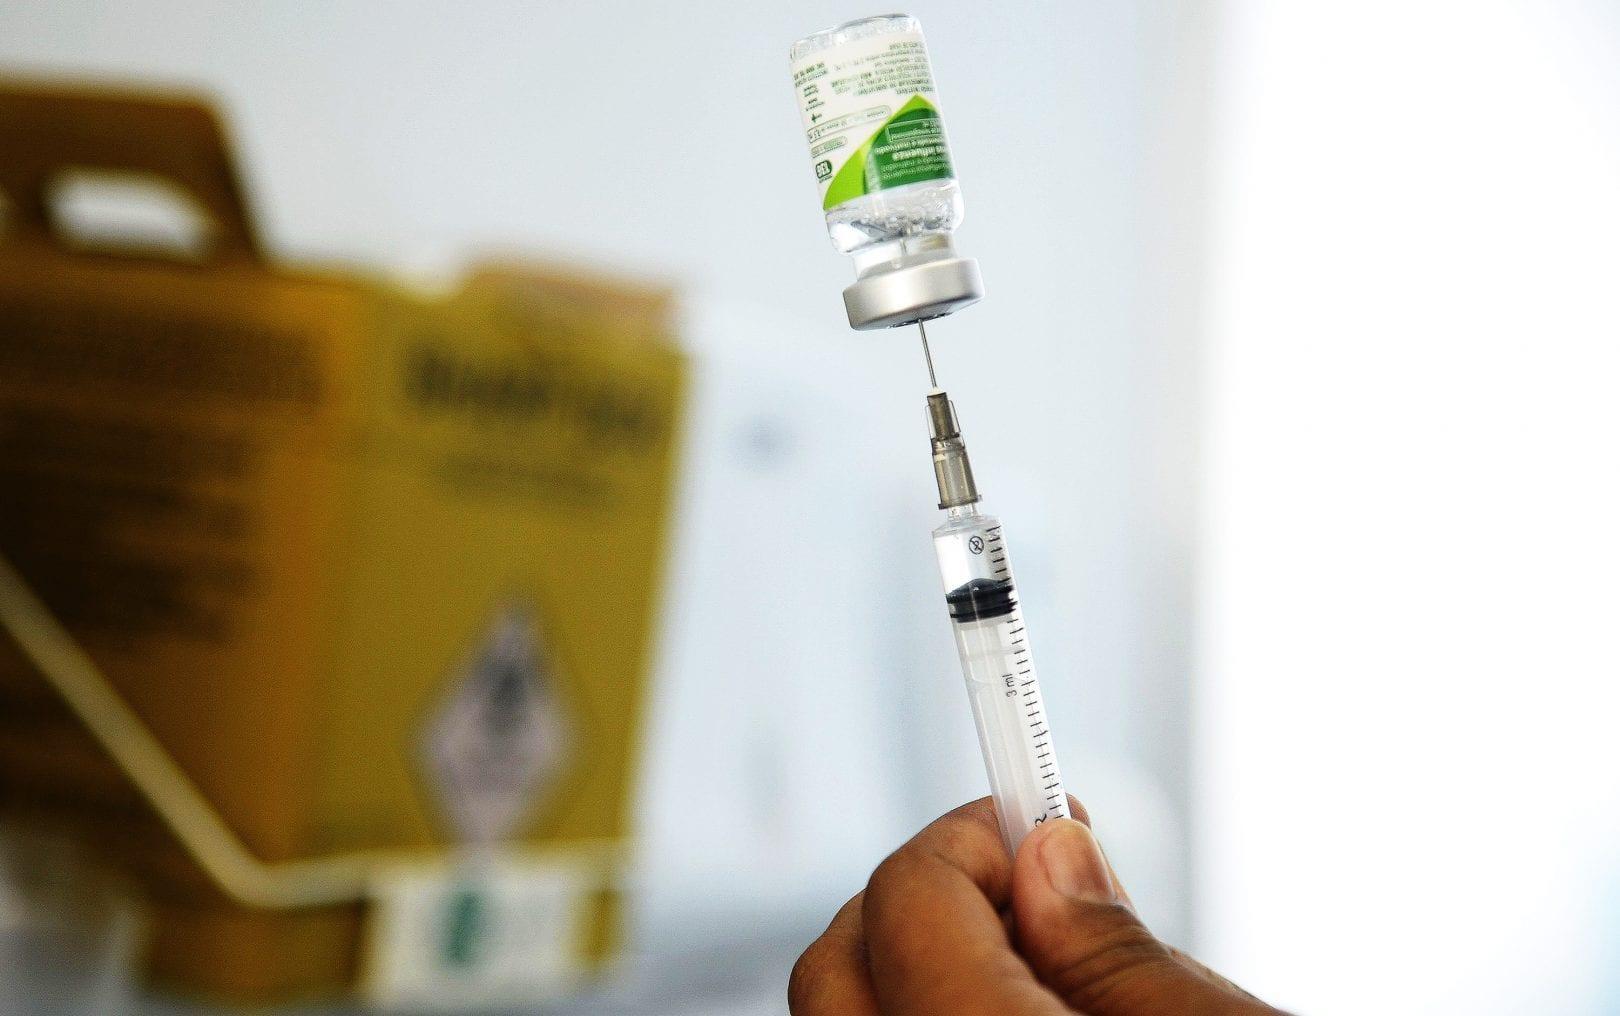 Dia D de vacinação contra gripe: veja onde se vacinar em Goiânia